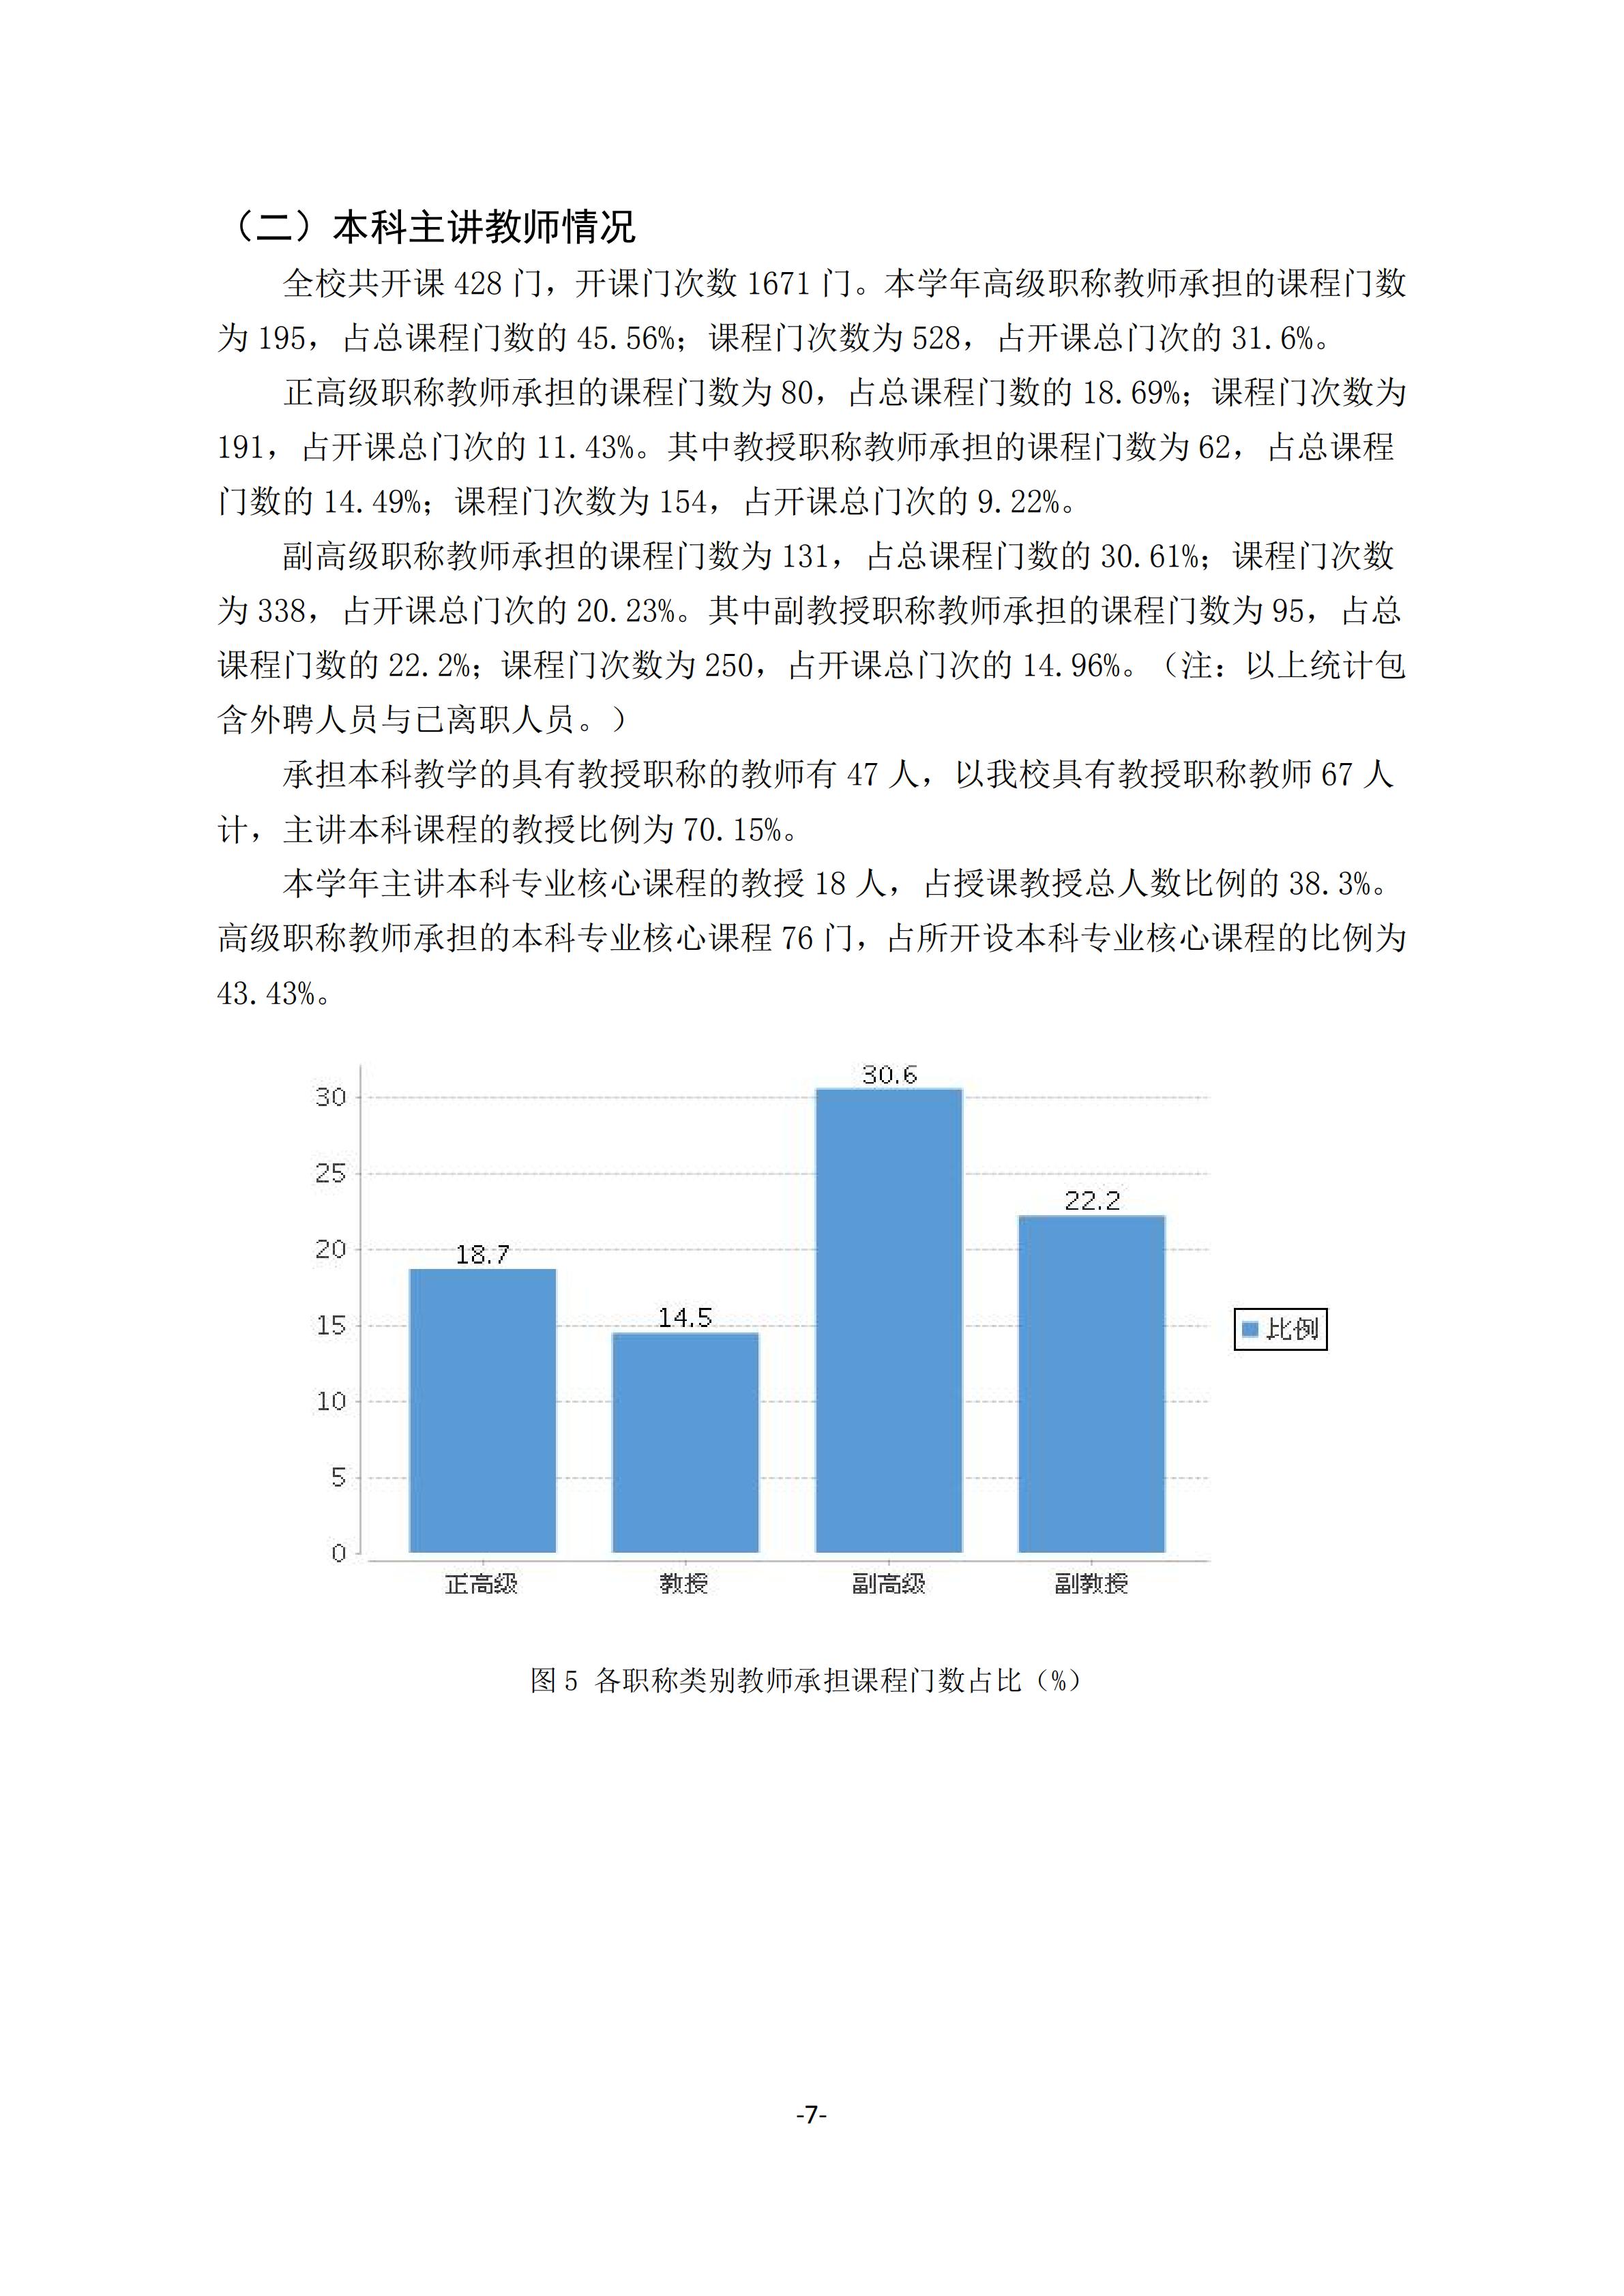 1.湖南交通工程学院2018-2019学年本科教学质量报告_06.jpg